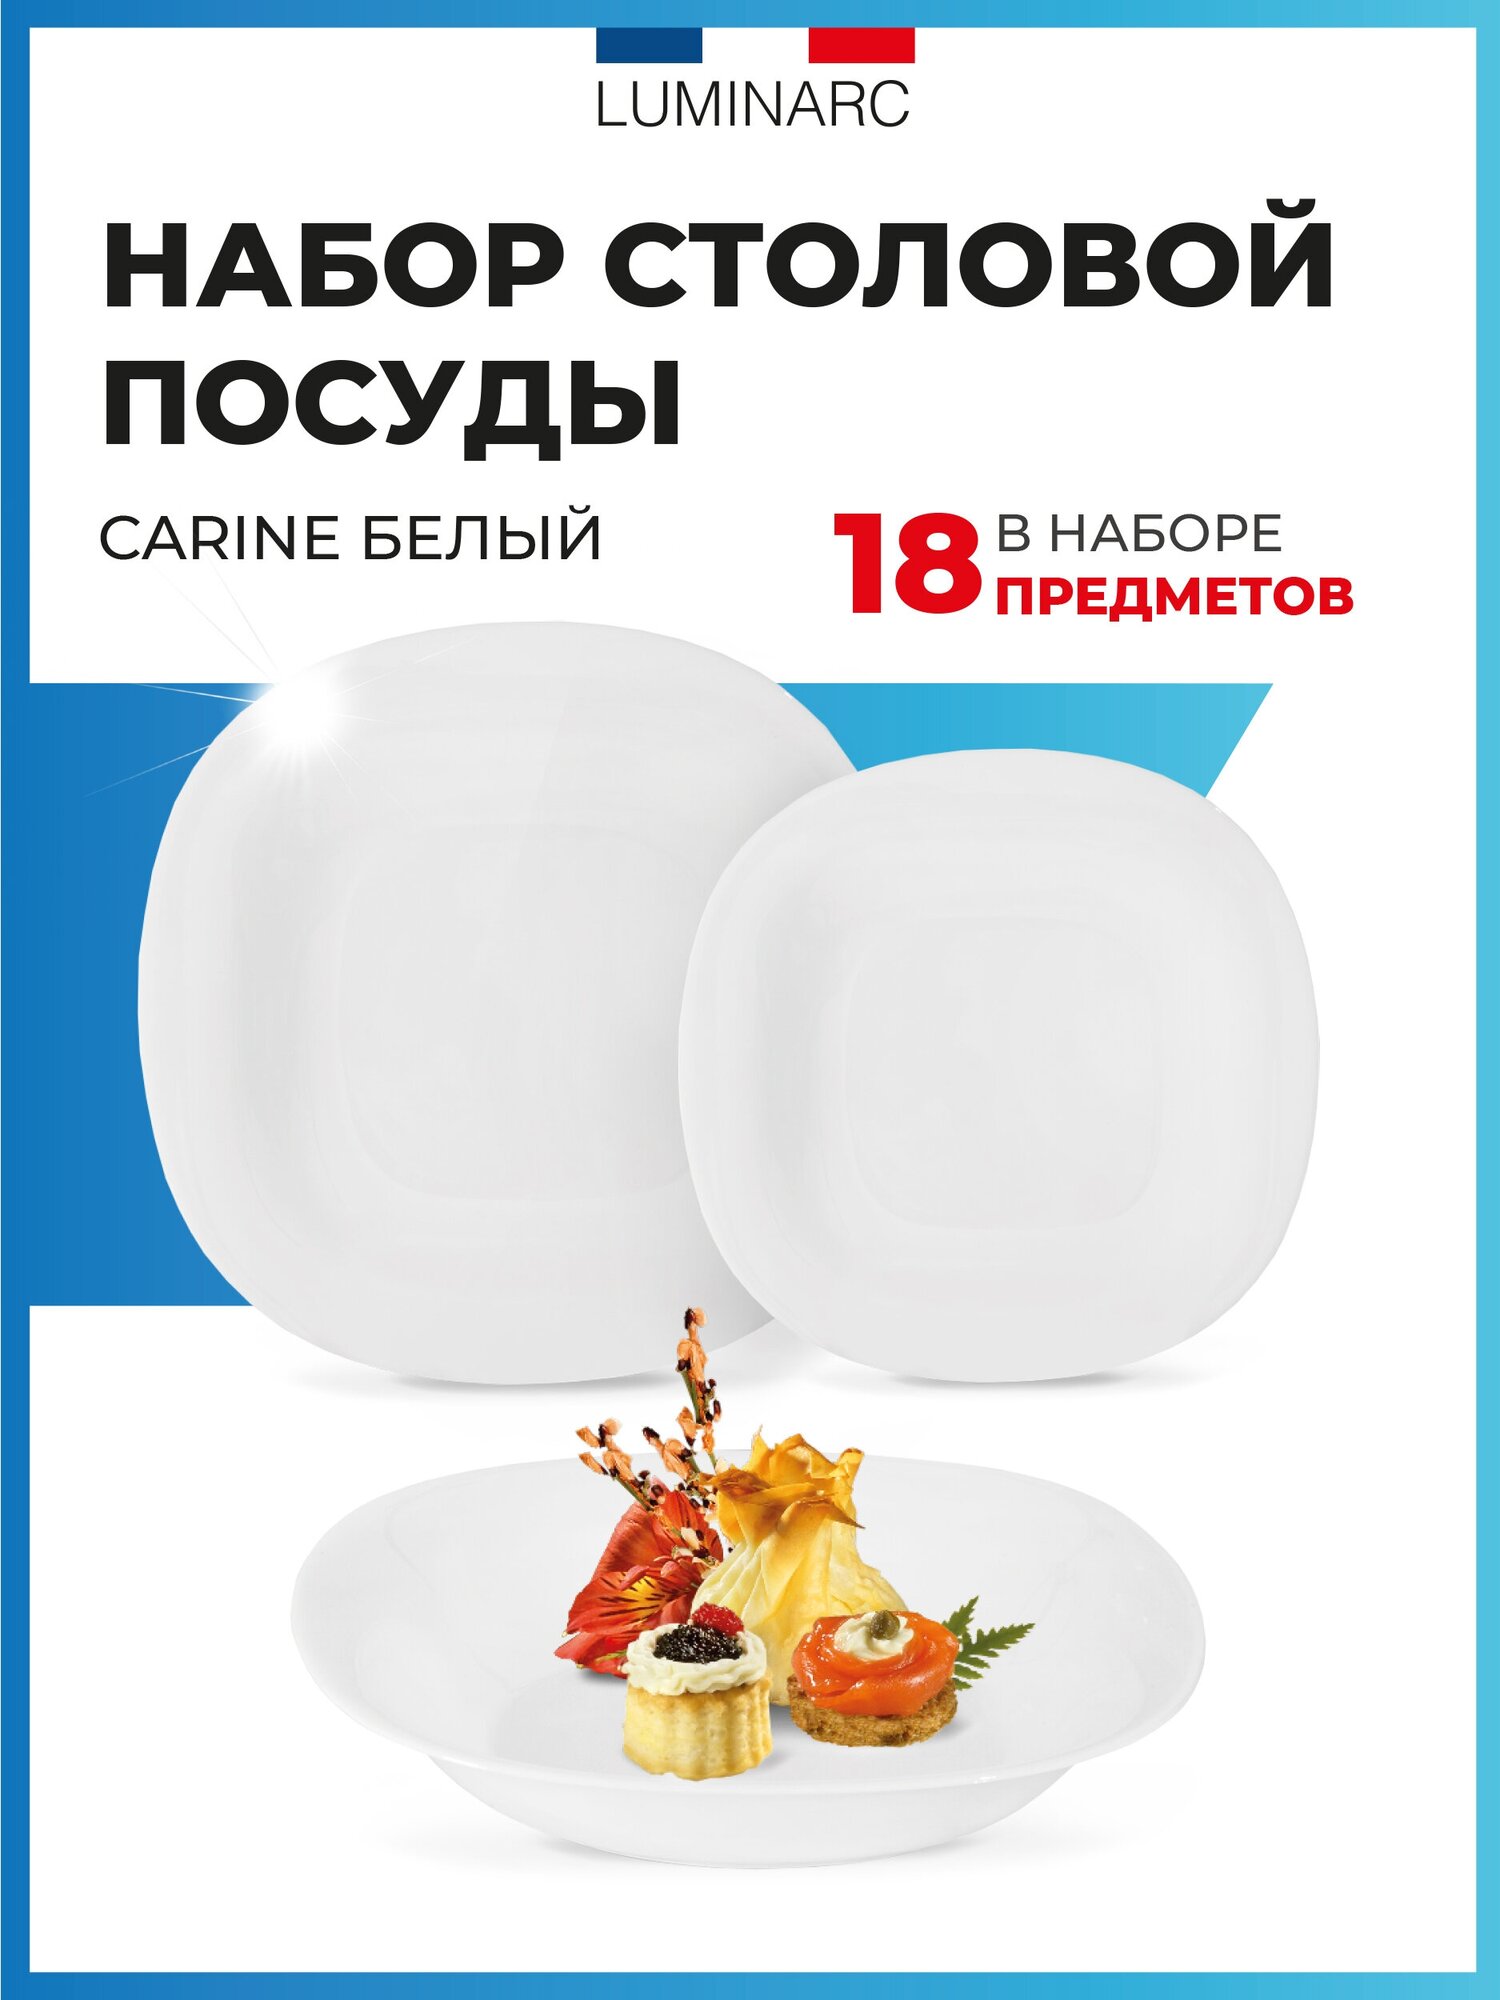 Набор столовой посуды Luminarc CARINE белый 18 предметов / посуда для сервировки стола / тарелки набор